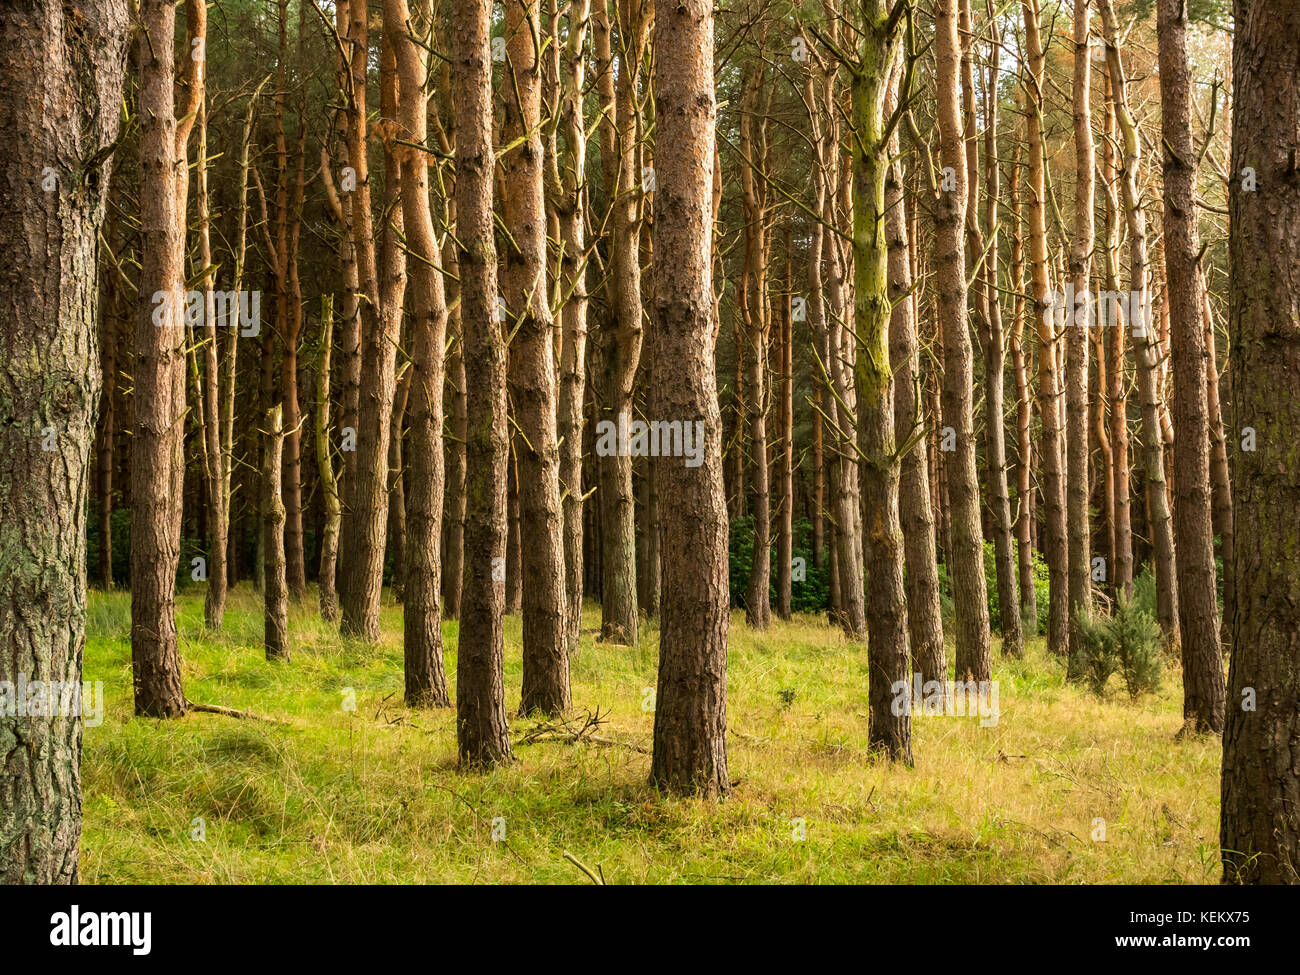 Ein Dickicht von geraden Baumstämme von Scots Kiefern, Pinus sylvestris, in Wäldern, tyninghame Estate, East Lothian, Schottland, Großbritannien Stockfoto